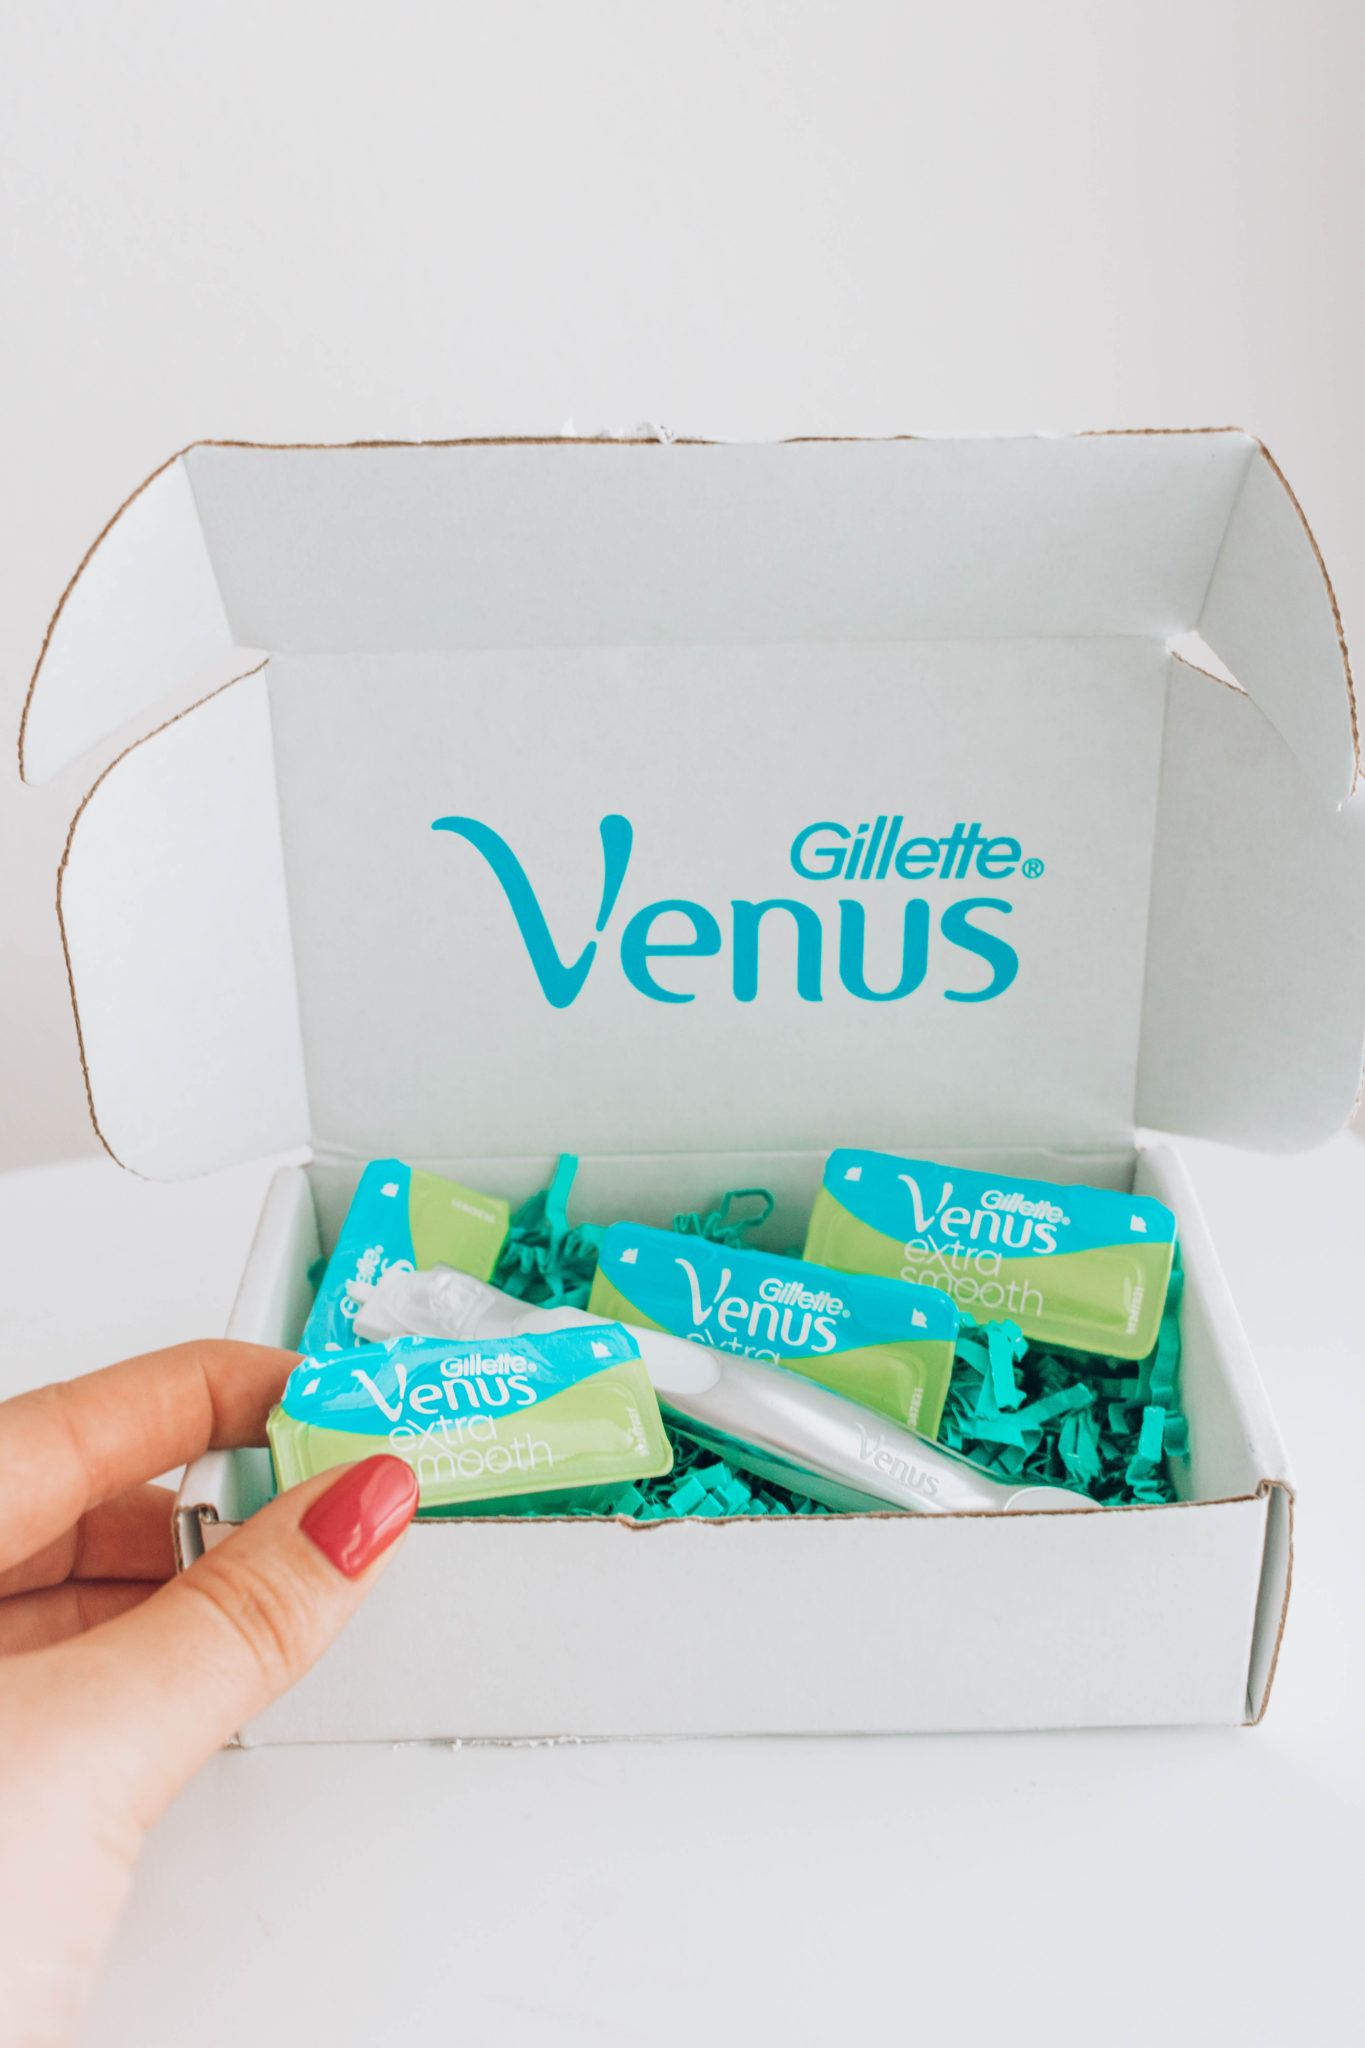 Gillette Venus women's razor subscription box